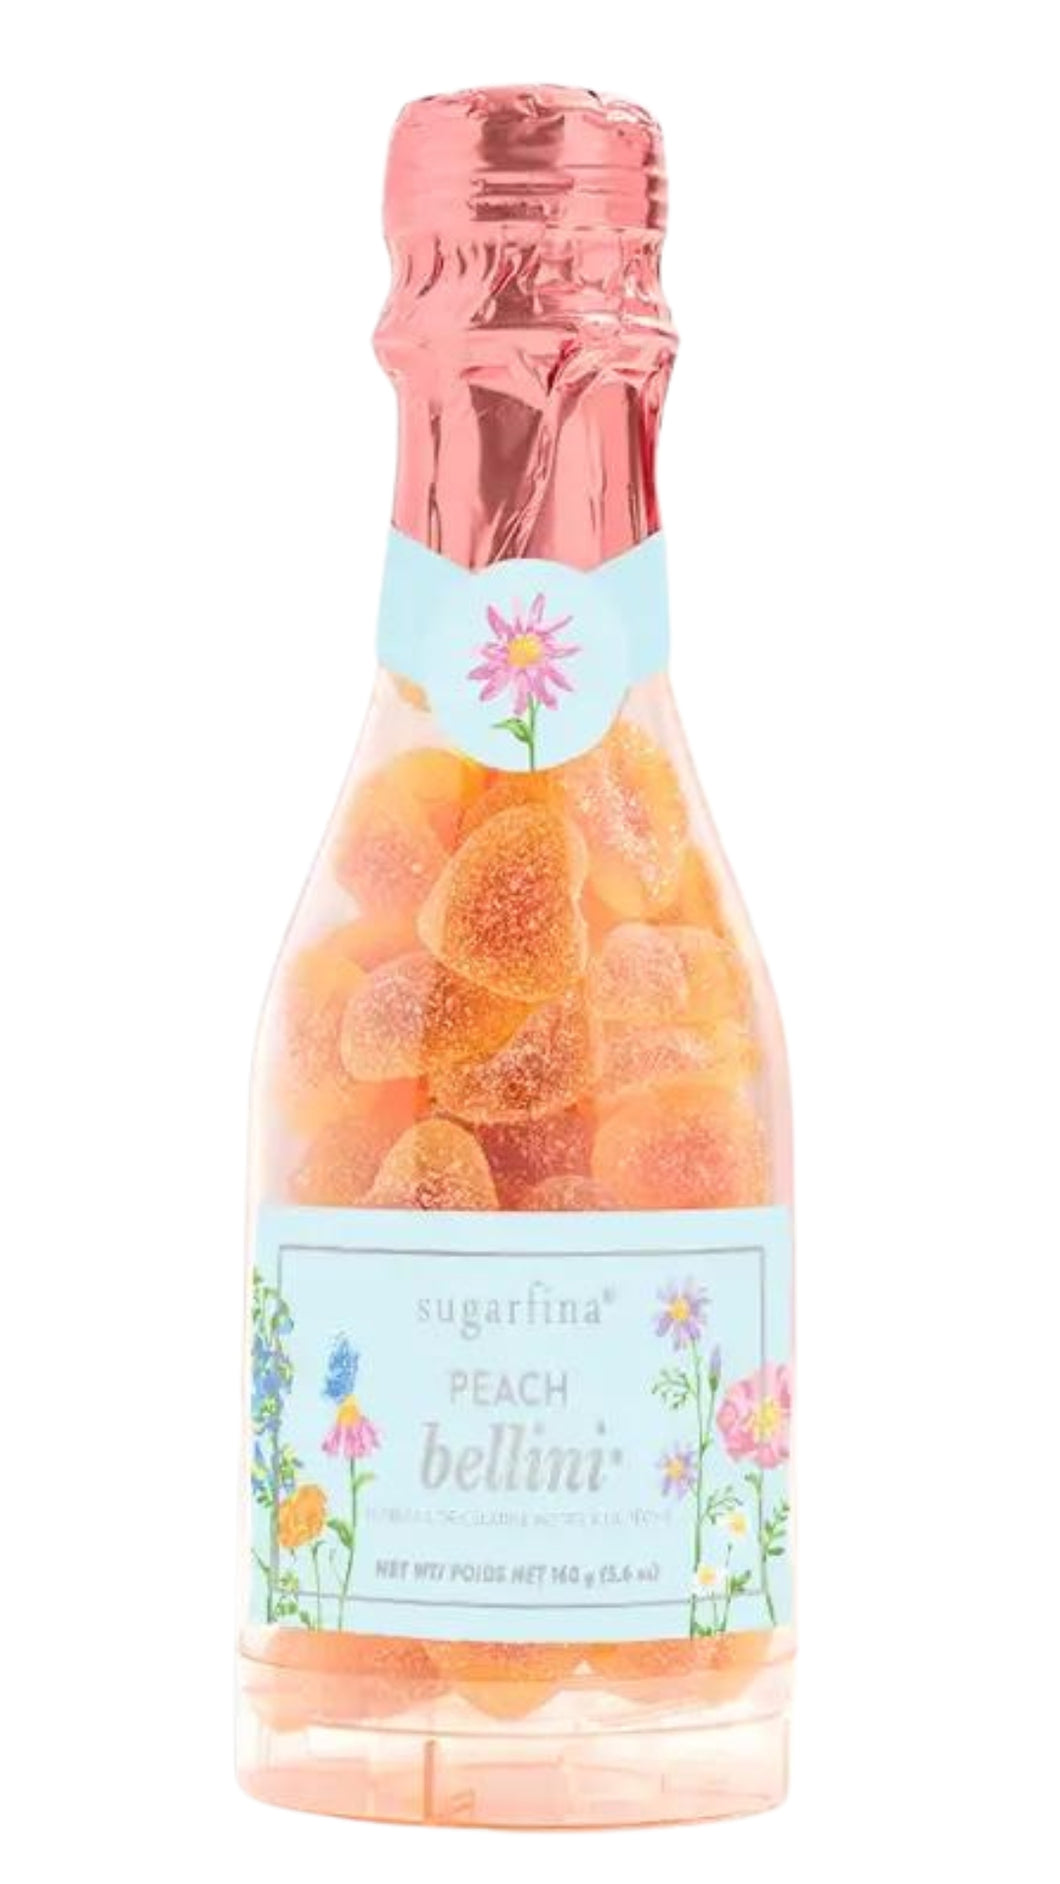 Peach Bellini Garden Bottle